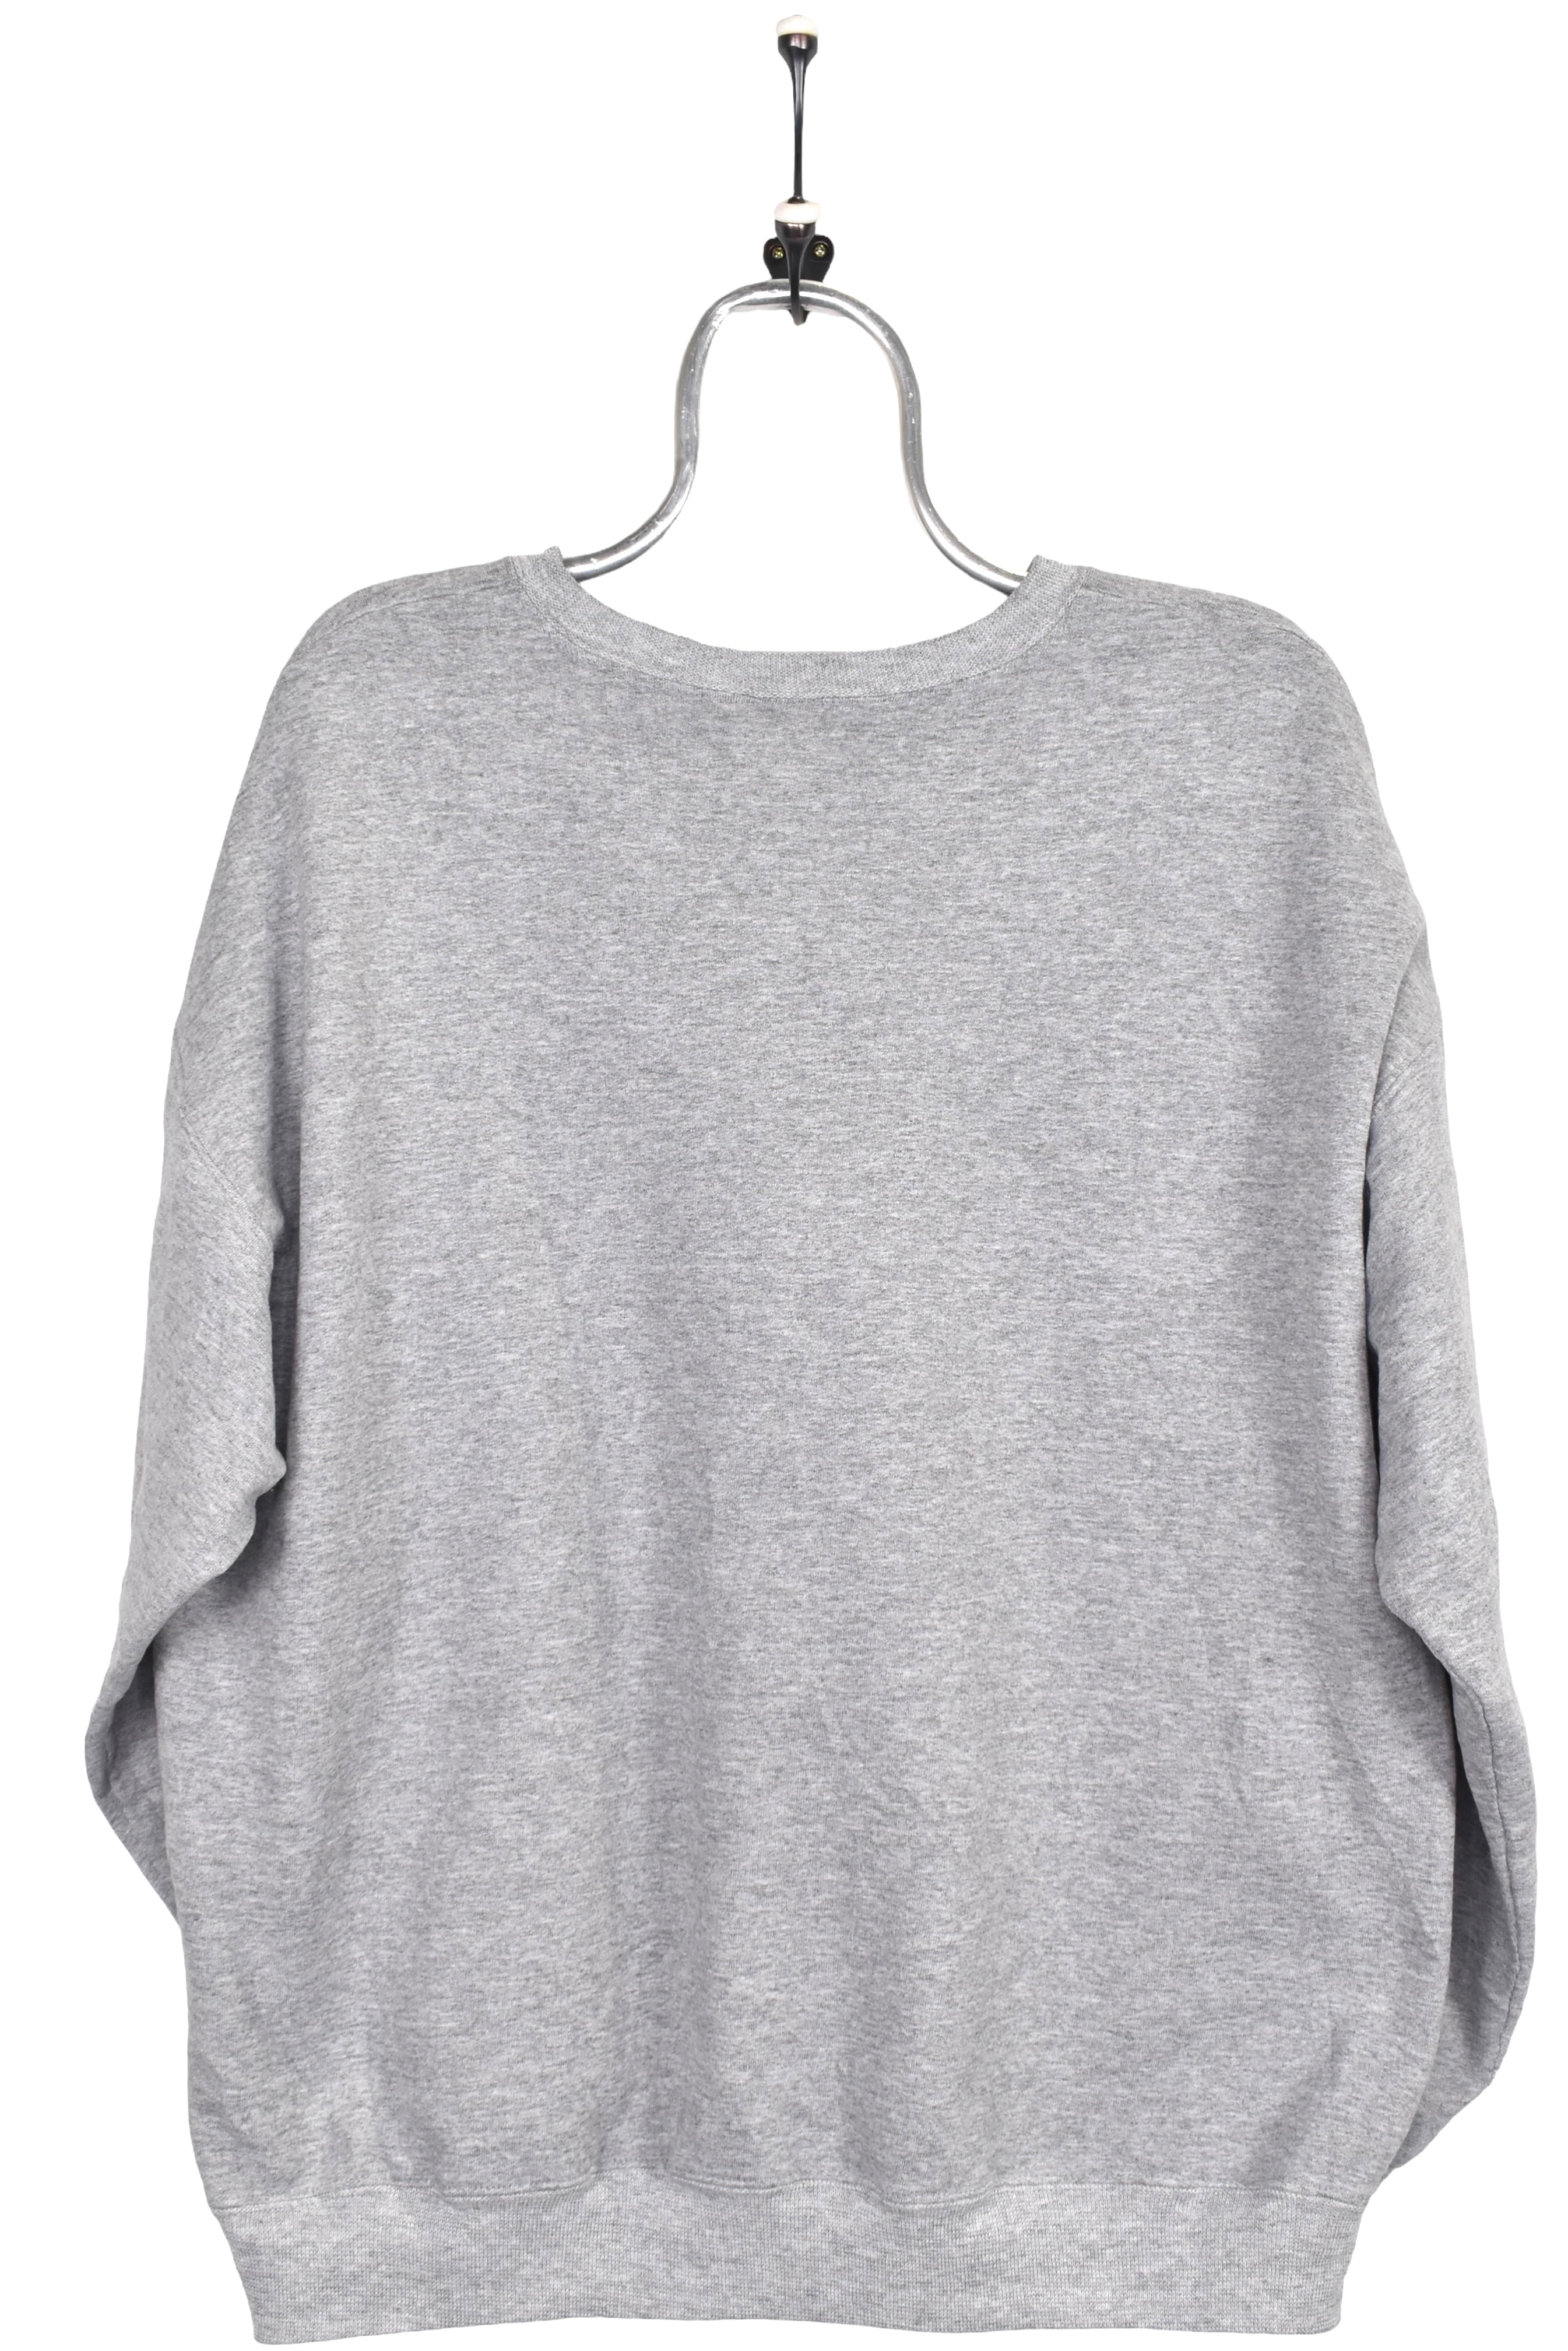 Vintage Starter sweatshirt XL, grey embroidered crewneck